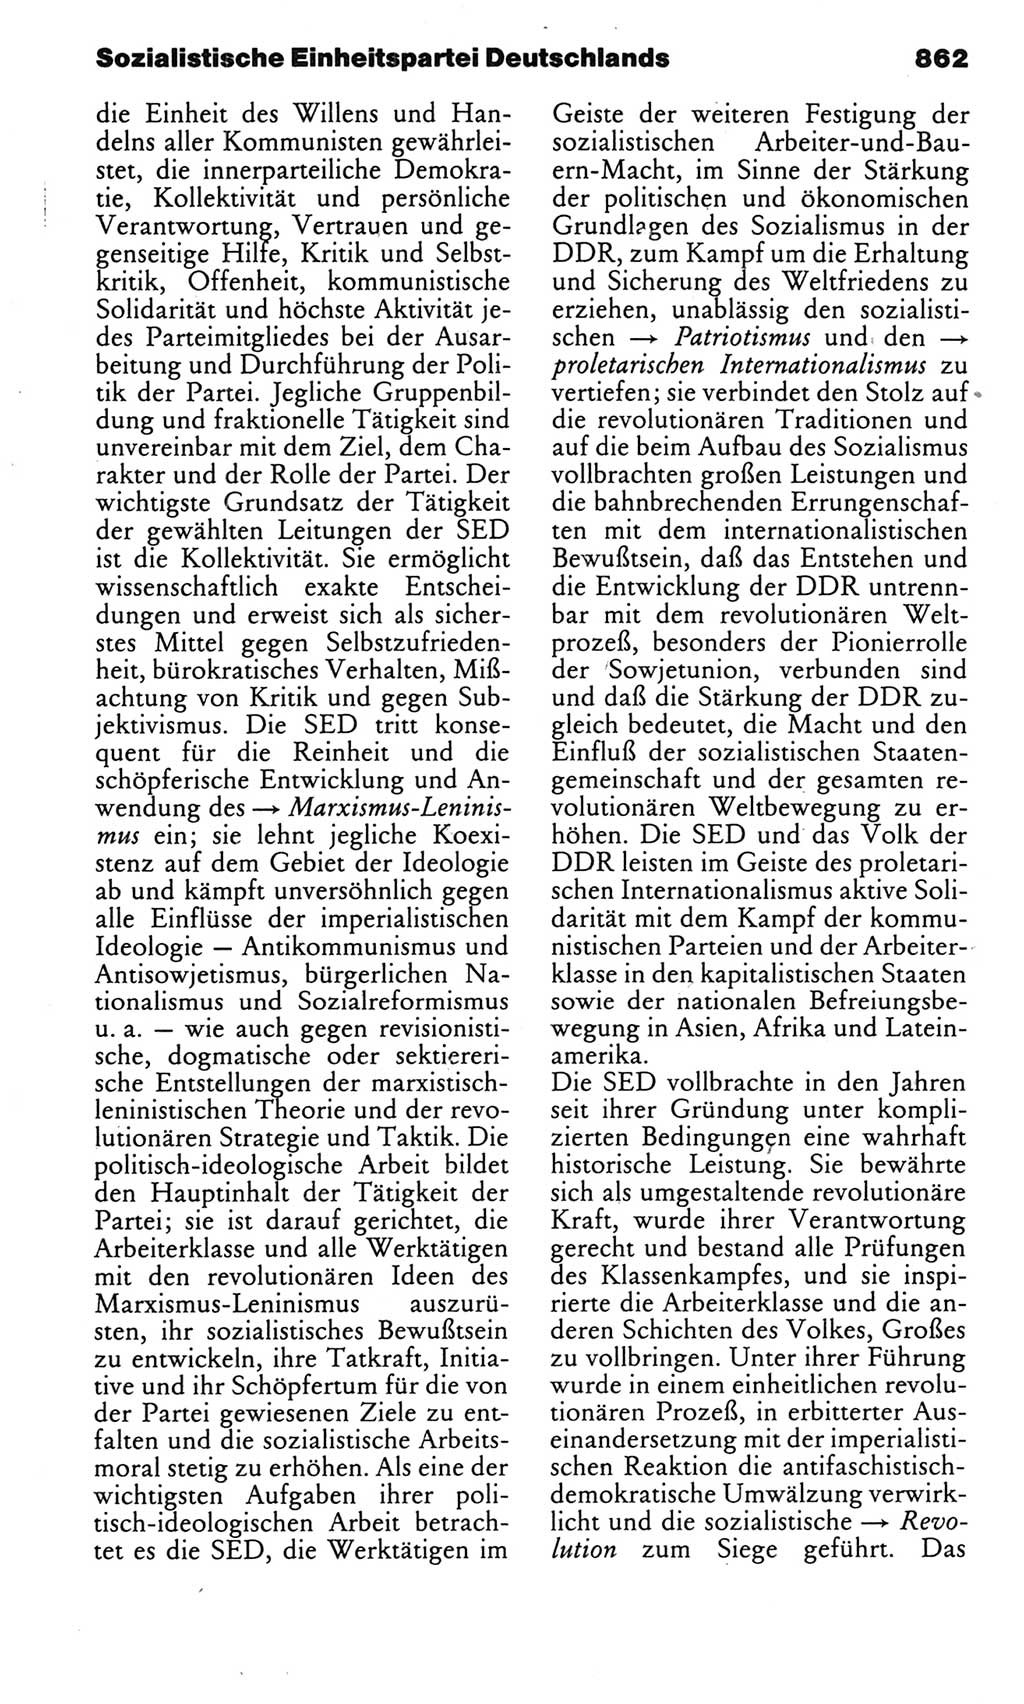 Kleines politisches Wörterbuch [Deutsche Demokratische Republik (DDR)] 1983, Seite 862 (Kl. pol. Wb. DDR 1983, S. 862)